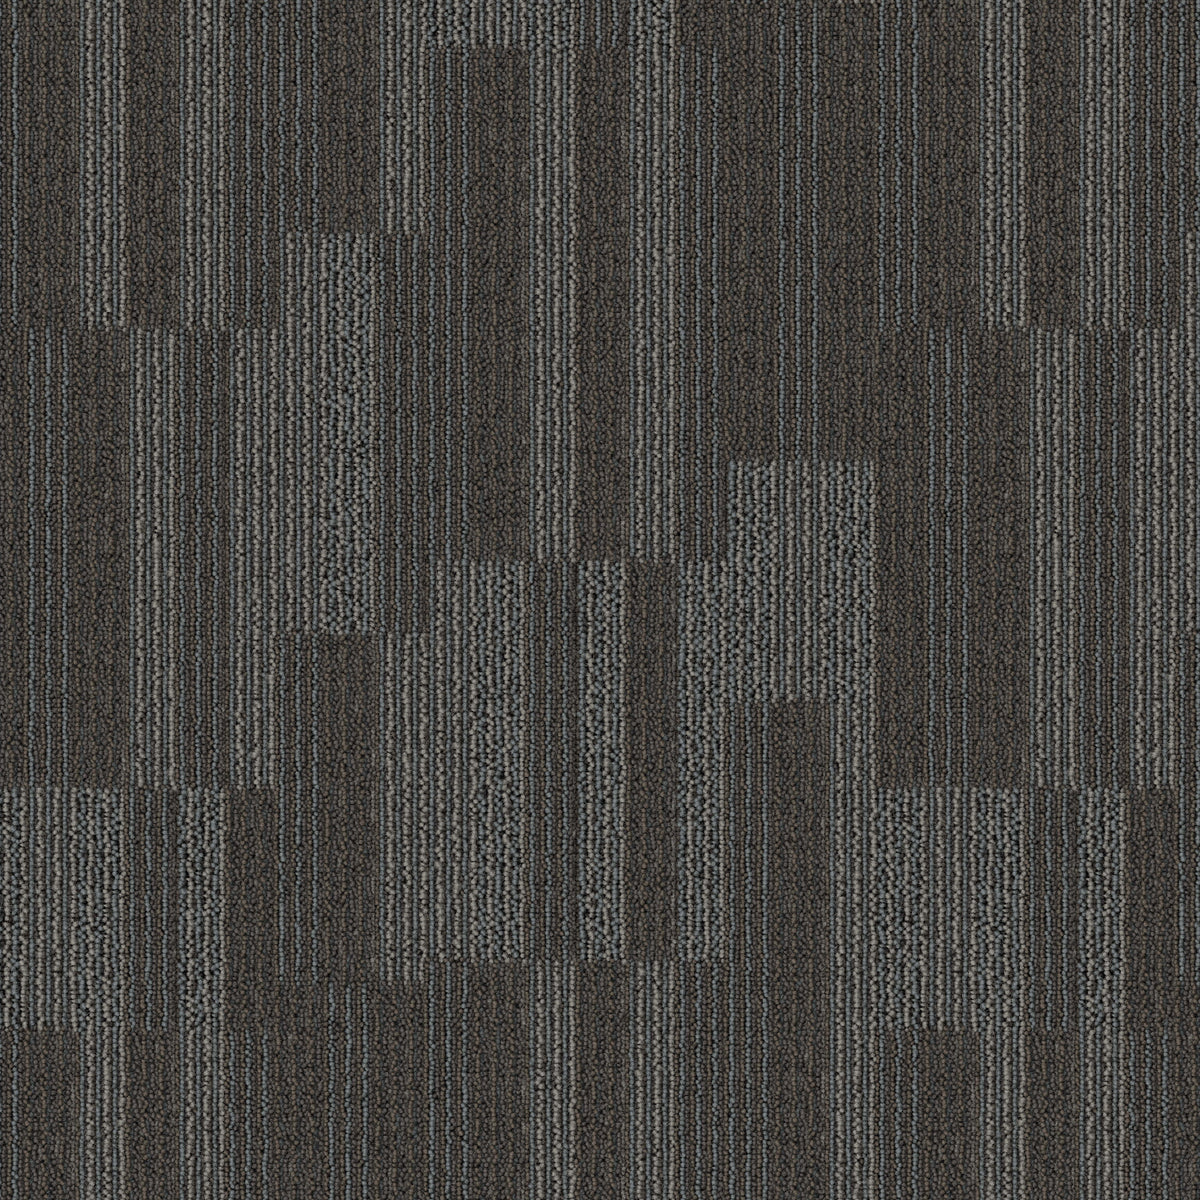 Mohawk Group - Bending Earth - Sector - Carpet Tile - Granite